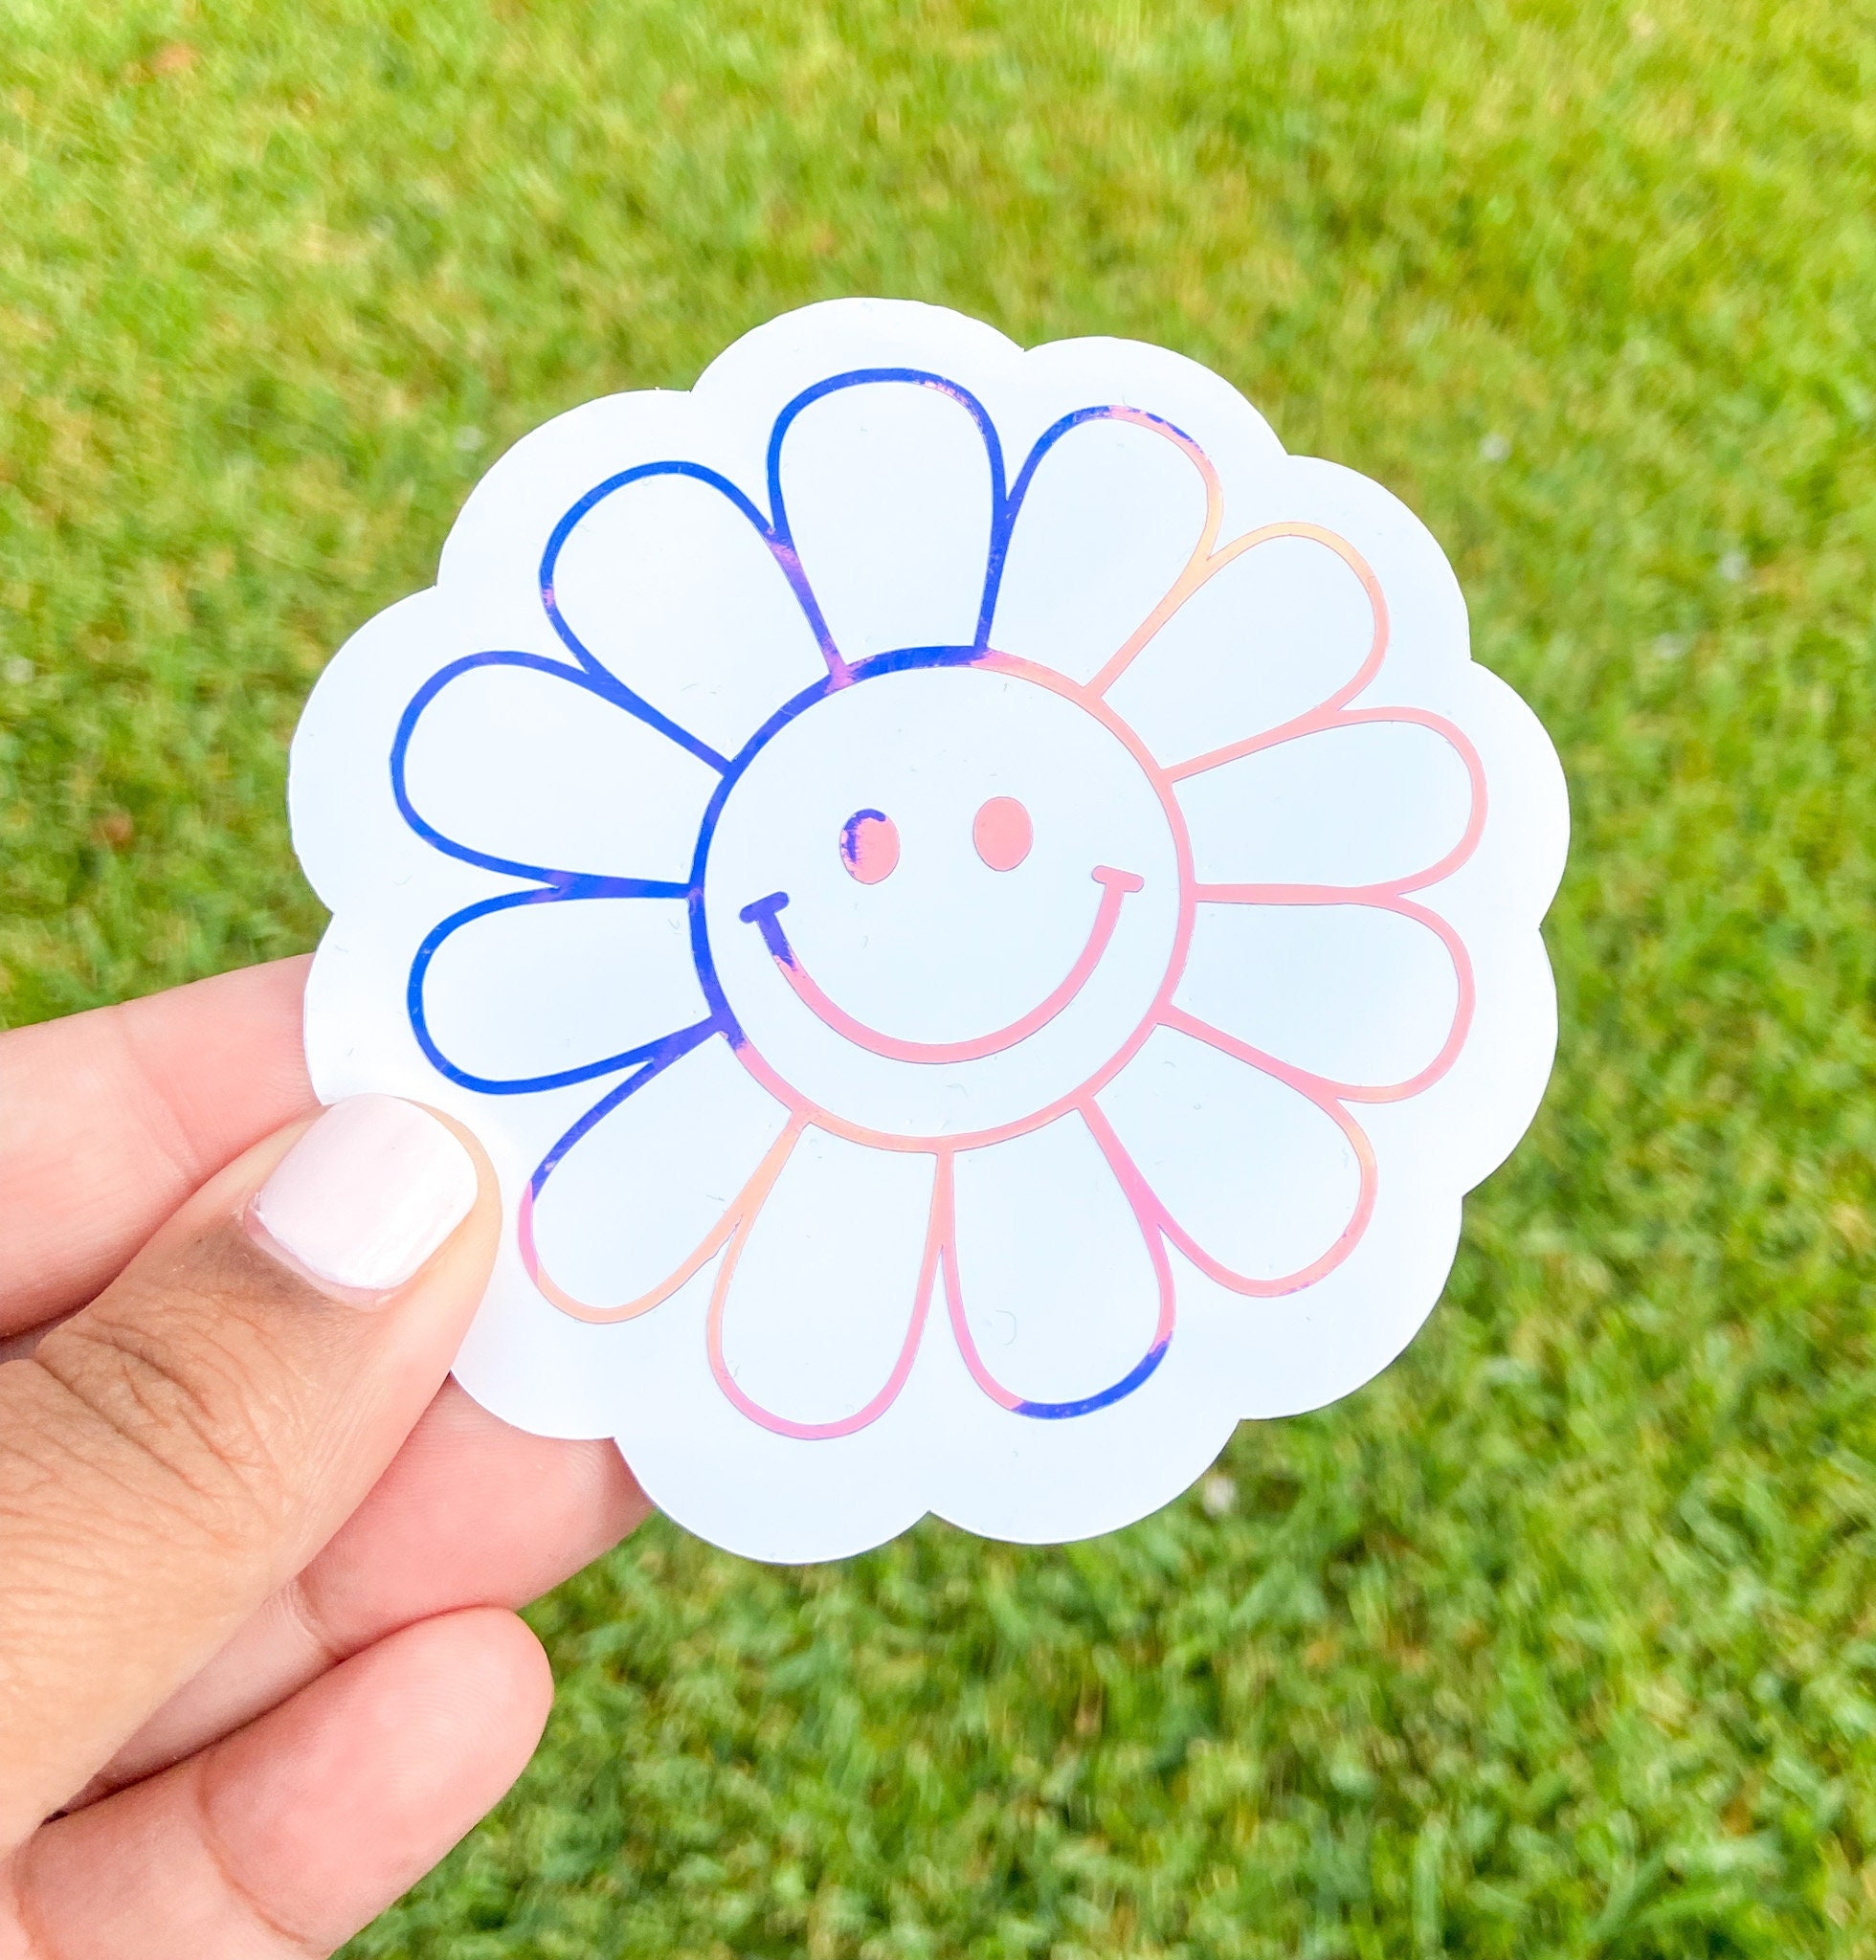 OUNONA 15 Sheets Girls Flower Stickers Waterproof Face Decals